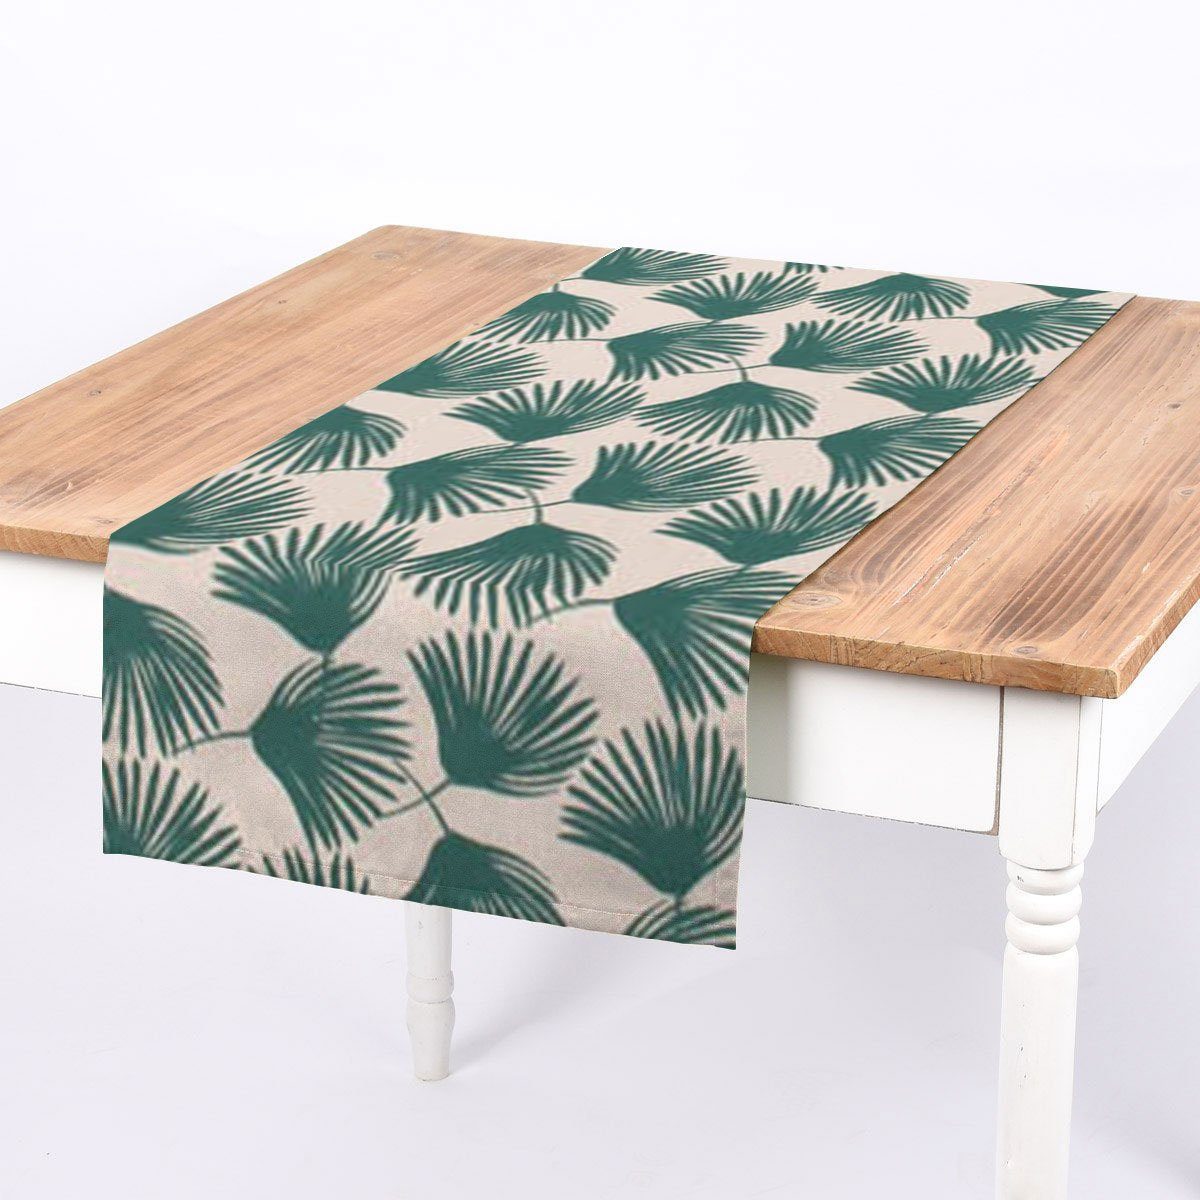 SCHÖNER LEBEN. Tischläufer SCHÖNER LEBEN. Tischläufer Jalia Palmenblätter grün beige 40x160cm, handmade